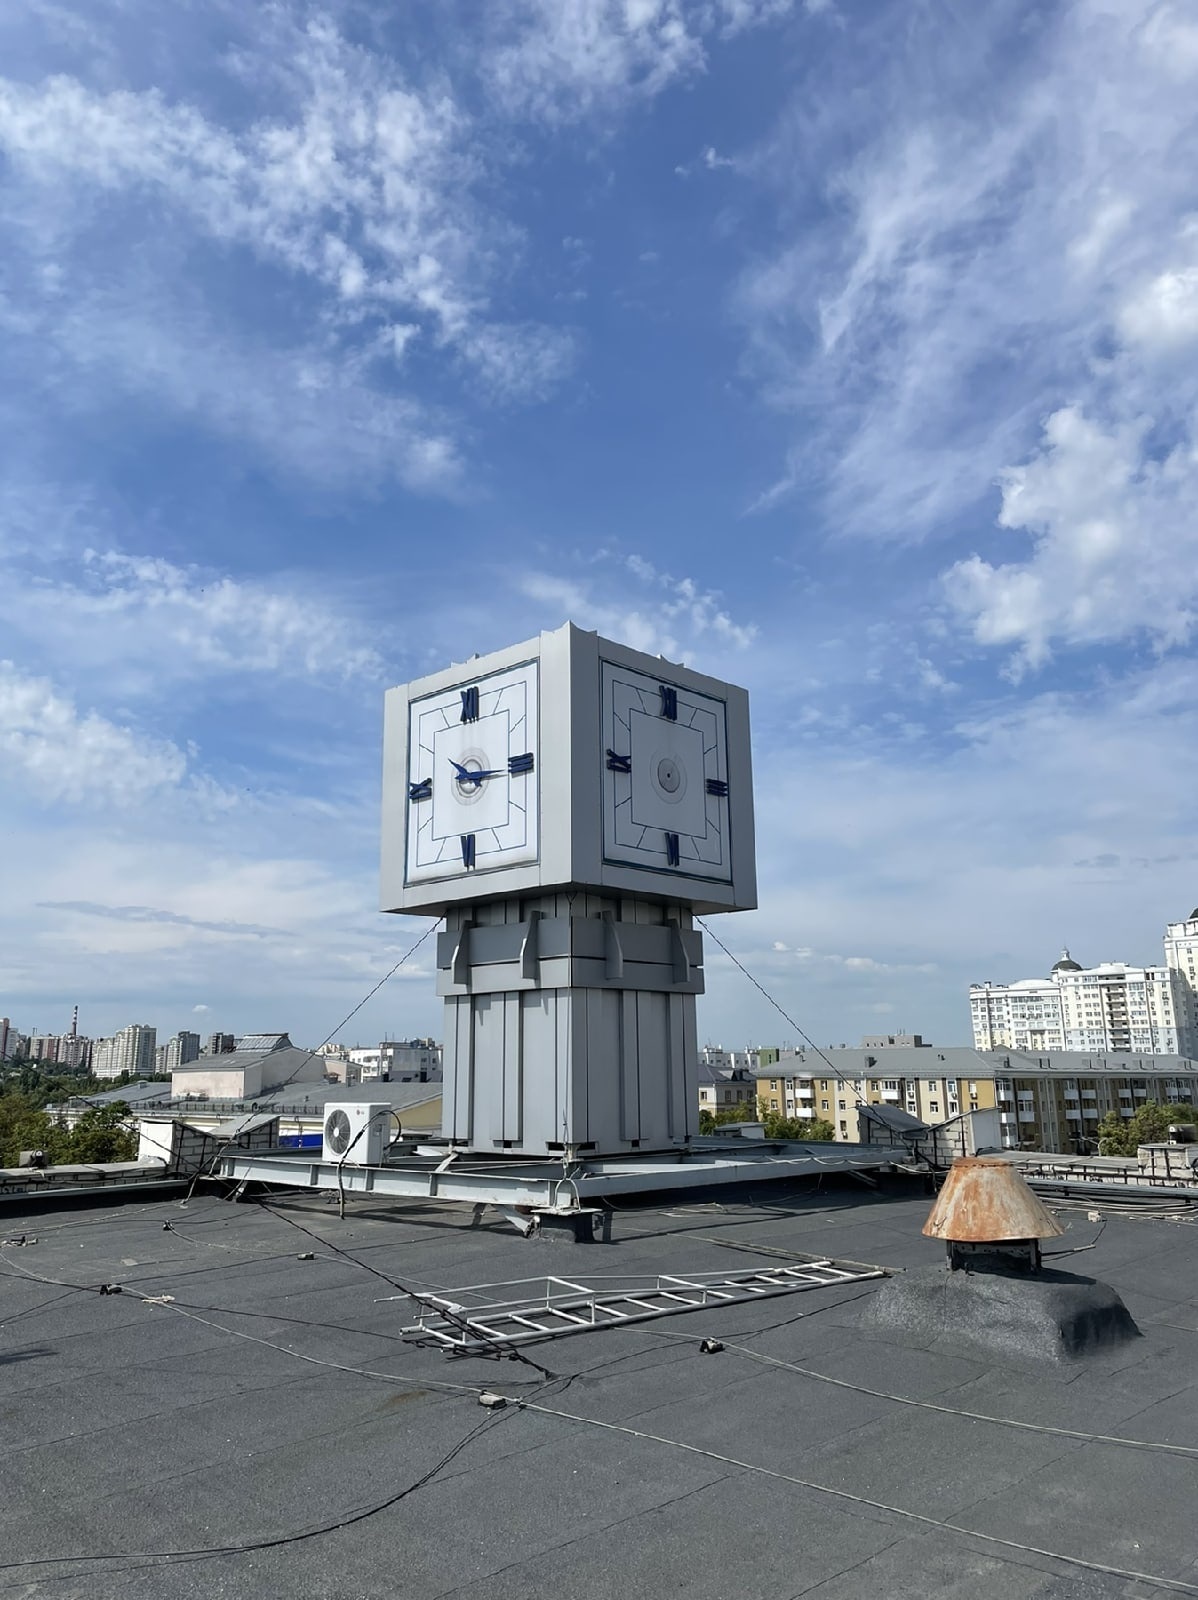 Часы с обновлённым механизмом на здании Белгородстата пробно запустят 22 июня